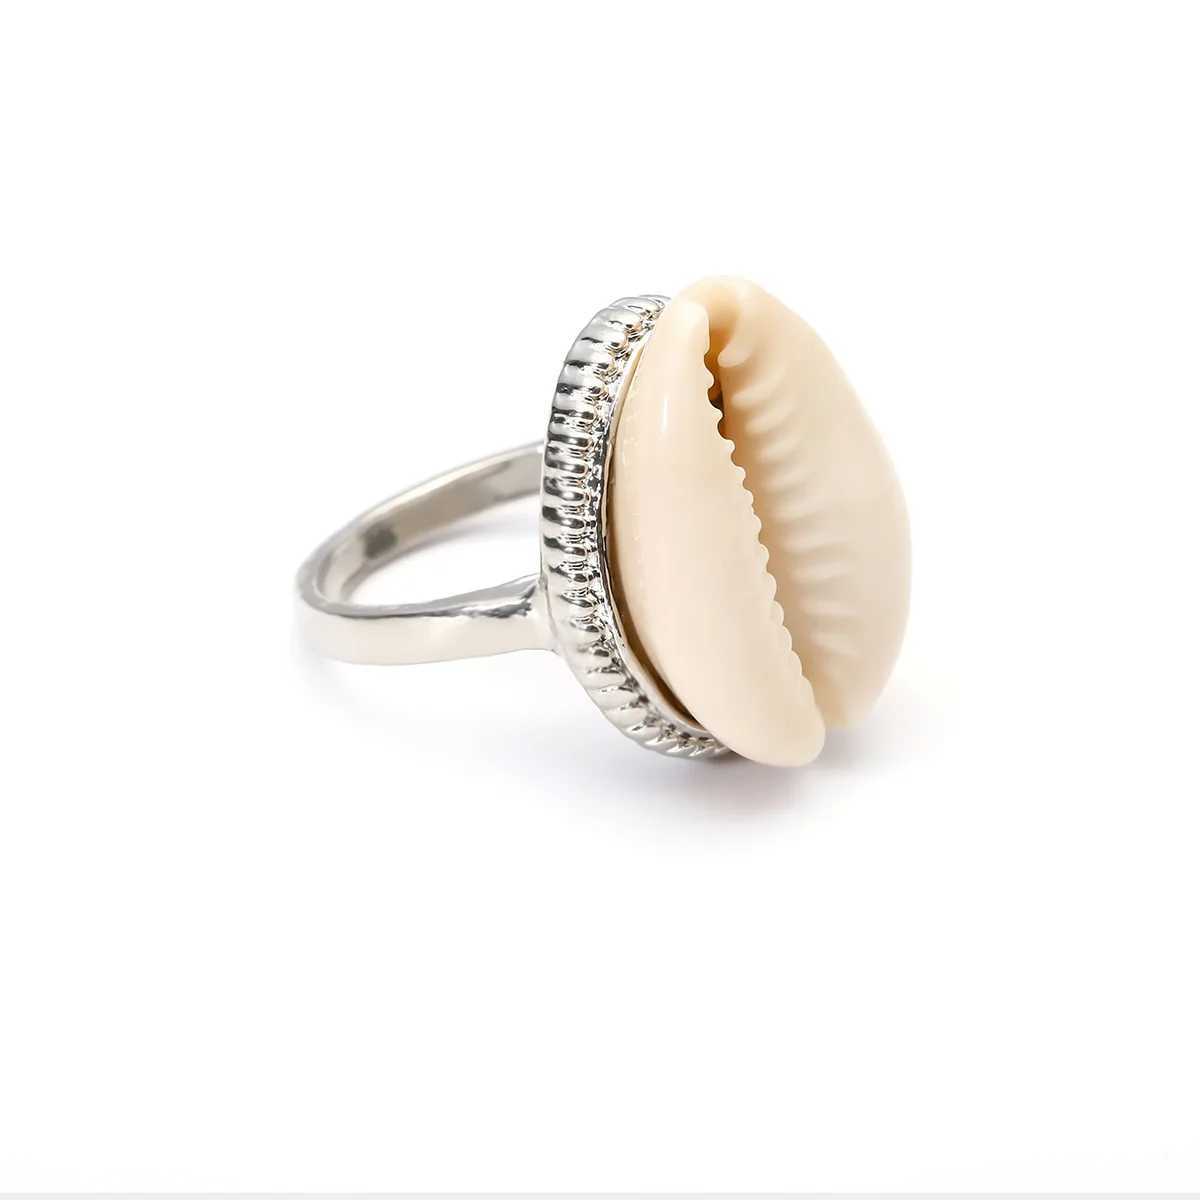 Anneaux de bande Bohème Antique couleur argent coquille anneau Midi doigt Knuckle anneaux pour femmes été plage bijoux Anillos accessoires 240125